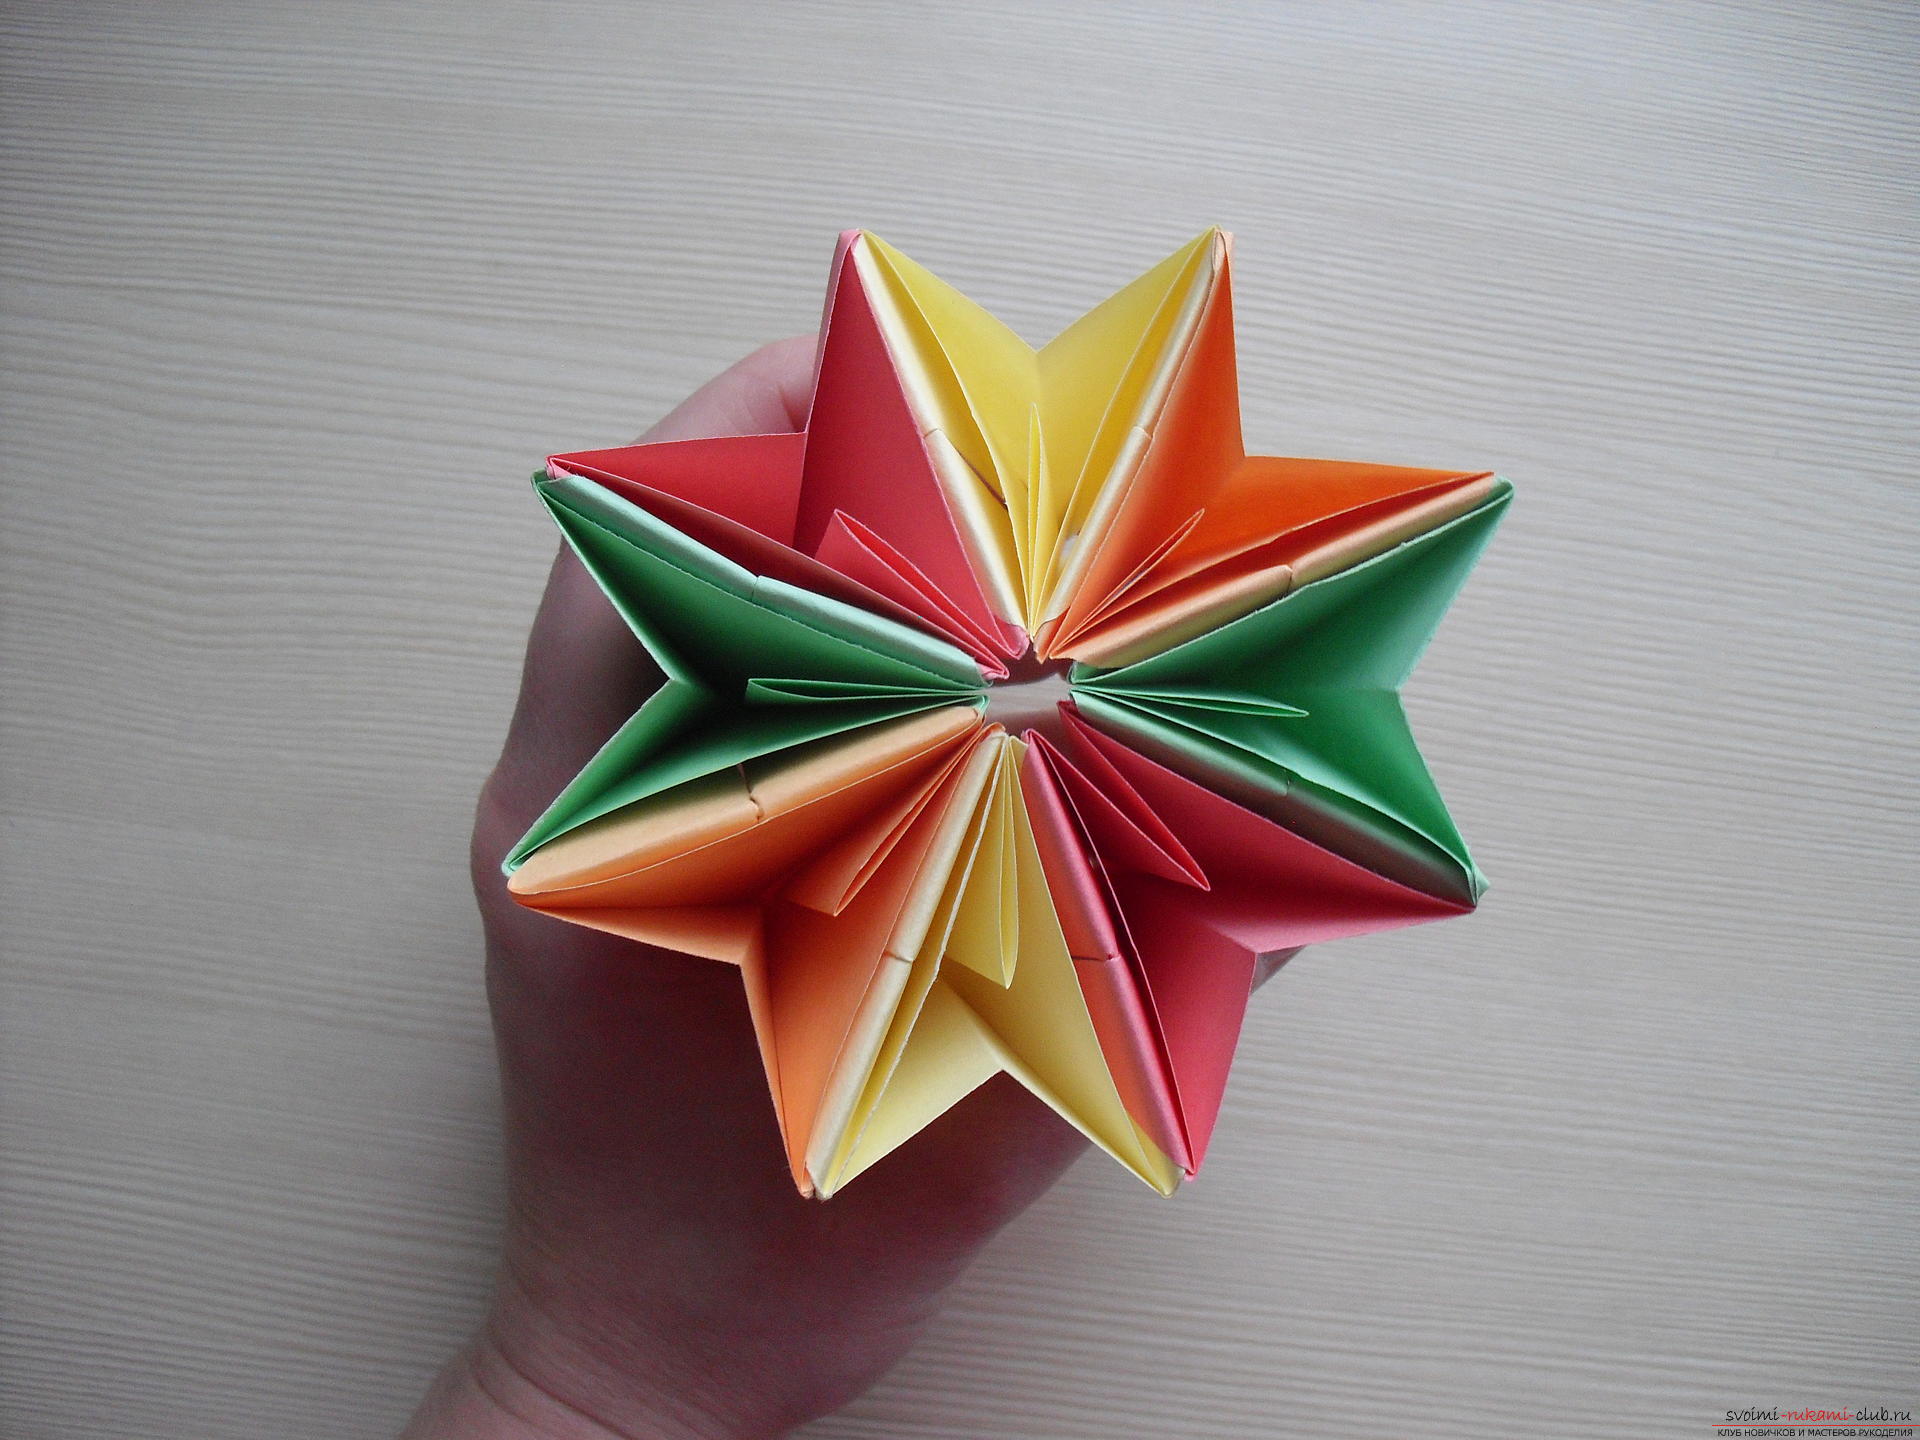 Этот мастер-класс расскажет как сделать своими руками поделку из бумаги - оригами-трансформер.. Фото №20